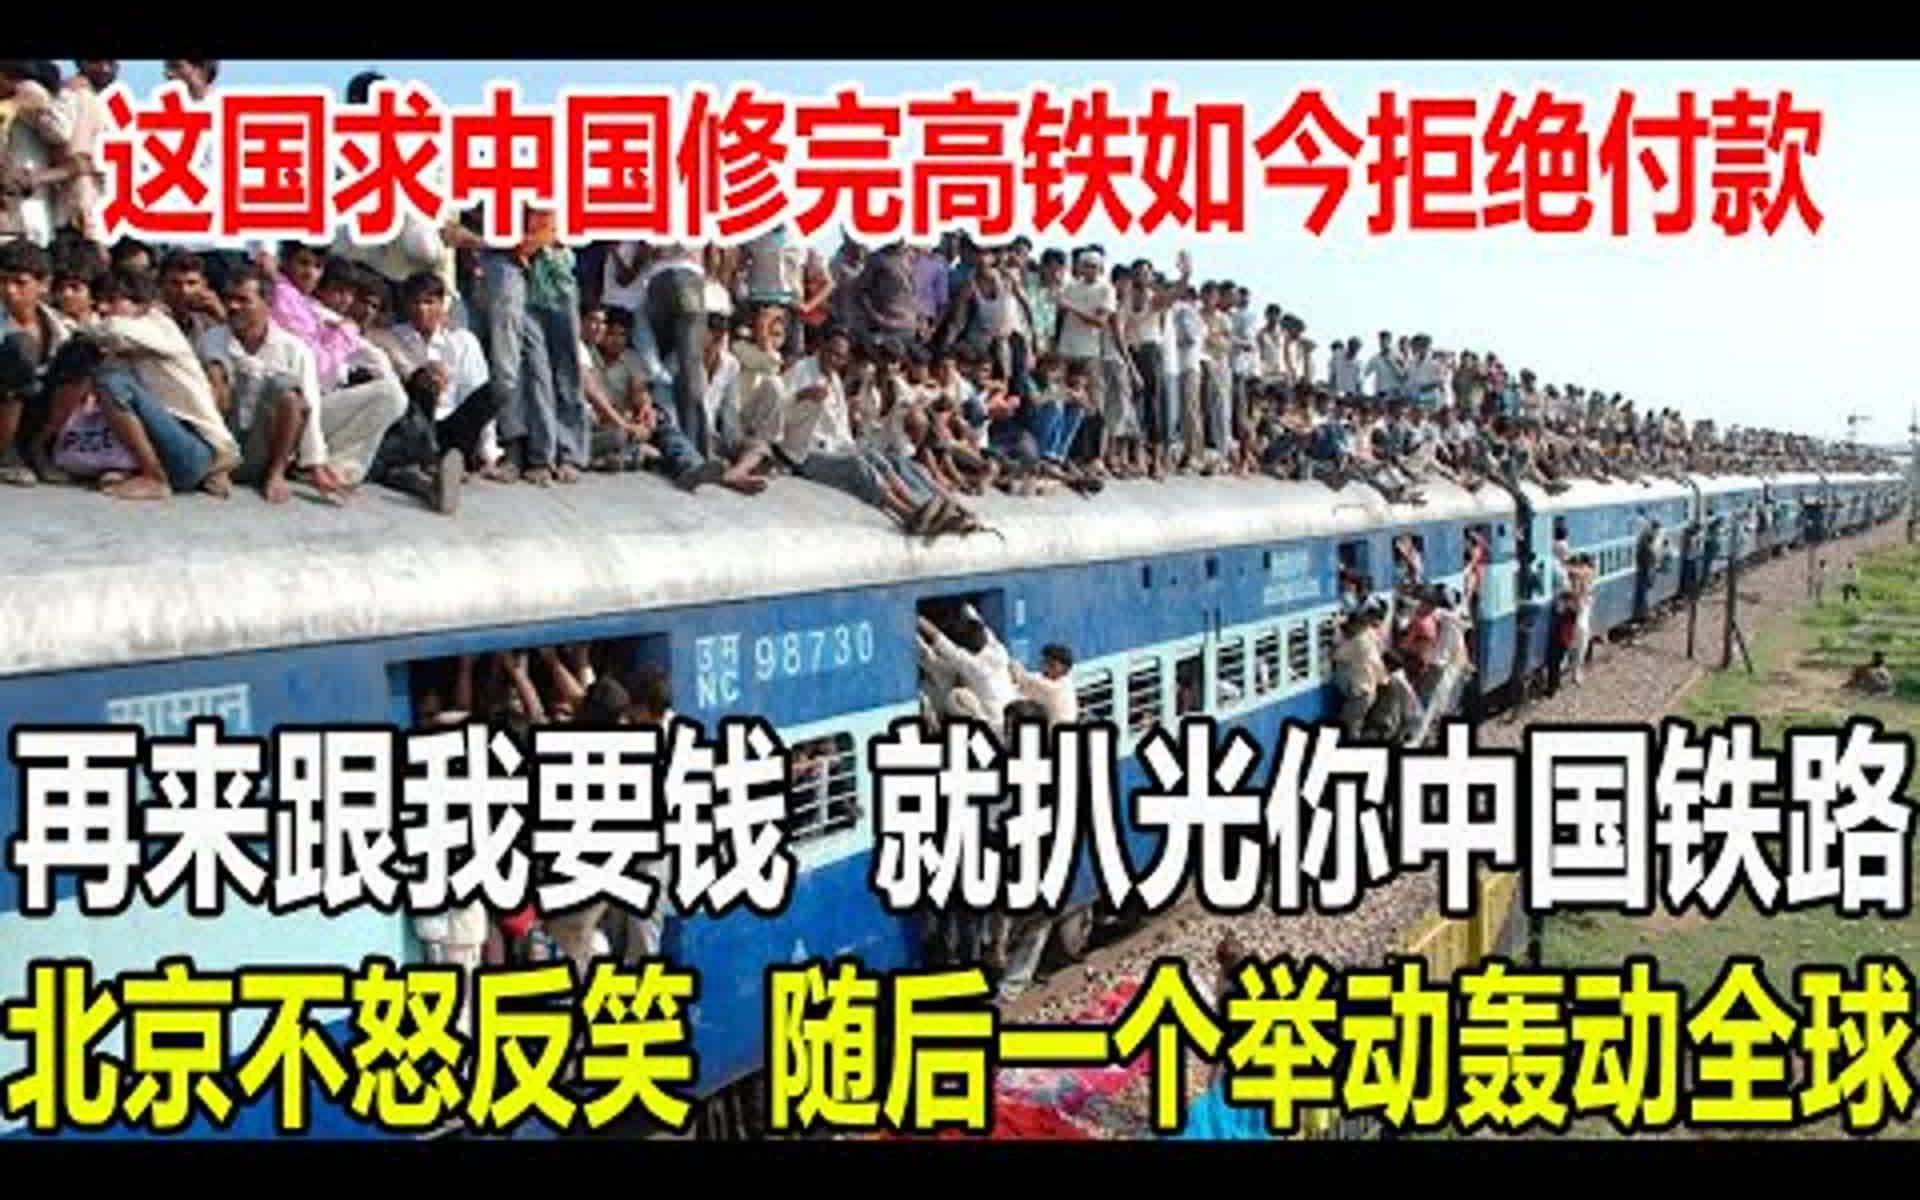 再来跟我要钱，就扒光你中国铁路,这国求中国修完高铁如今拒绝付款，北京不怒反笑，随后一个举动，都懵了。